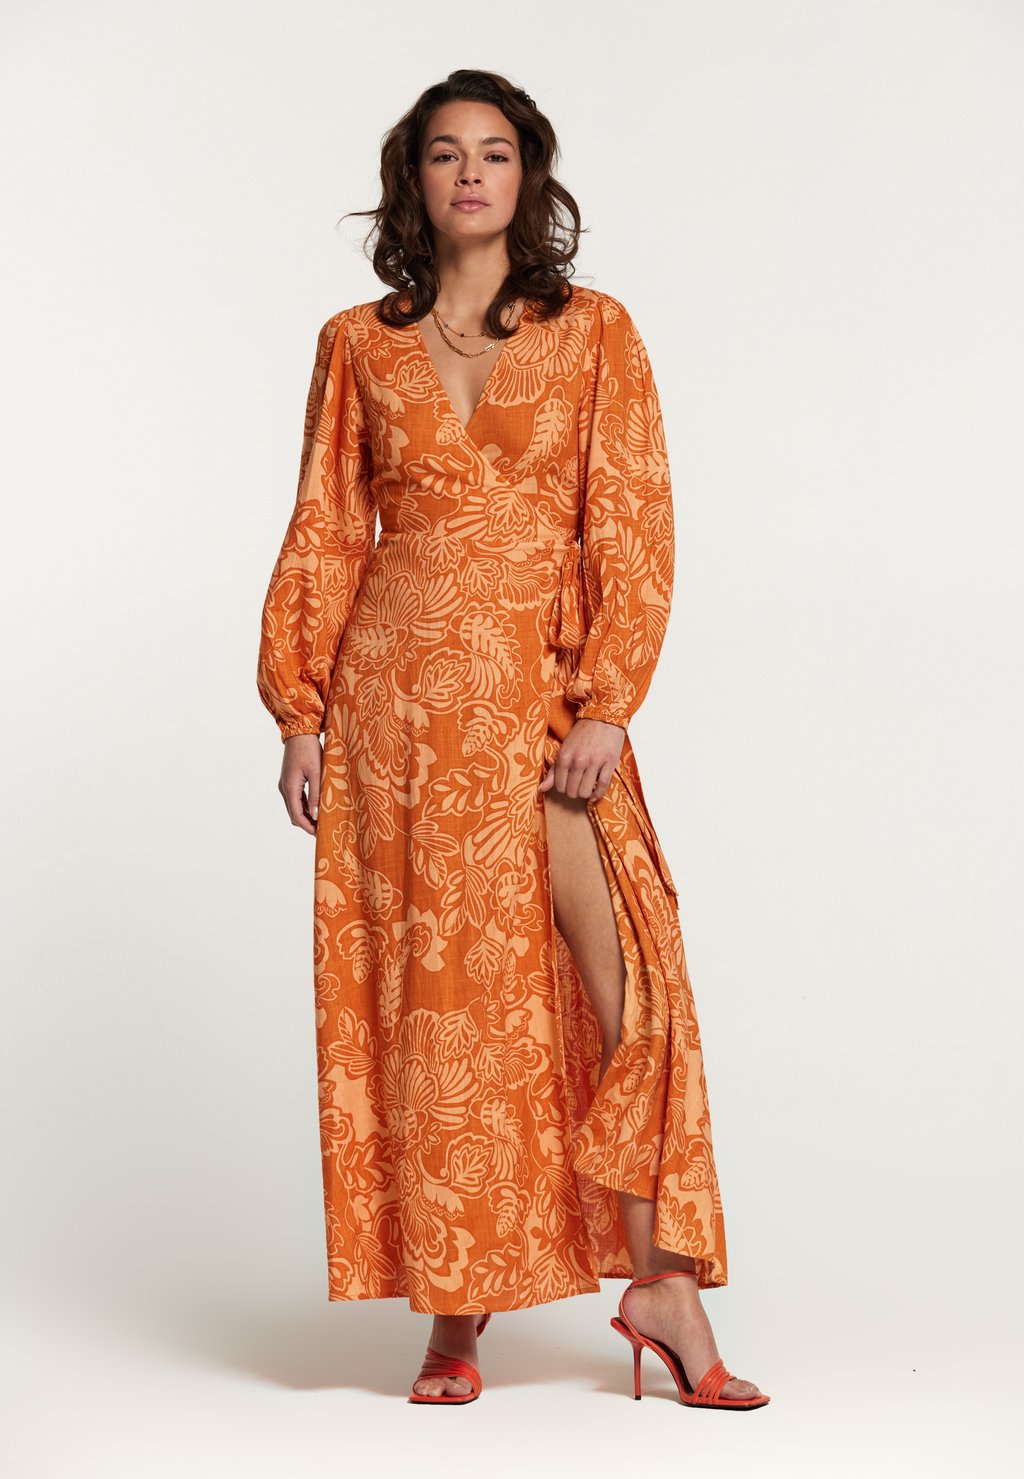 Длинное платье Shiwi бегония cascade pendula apricot orange 5 6 1 шт